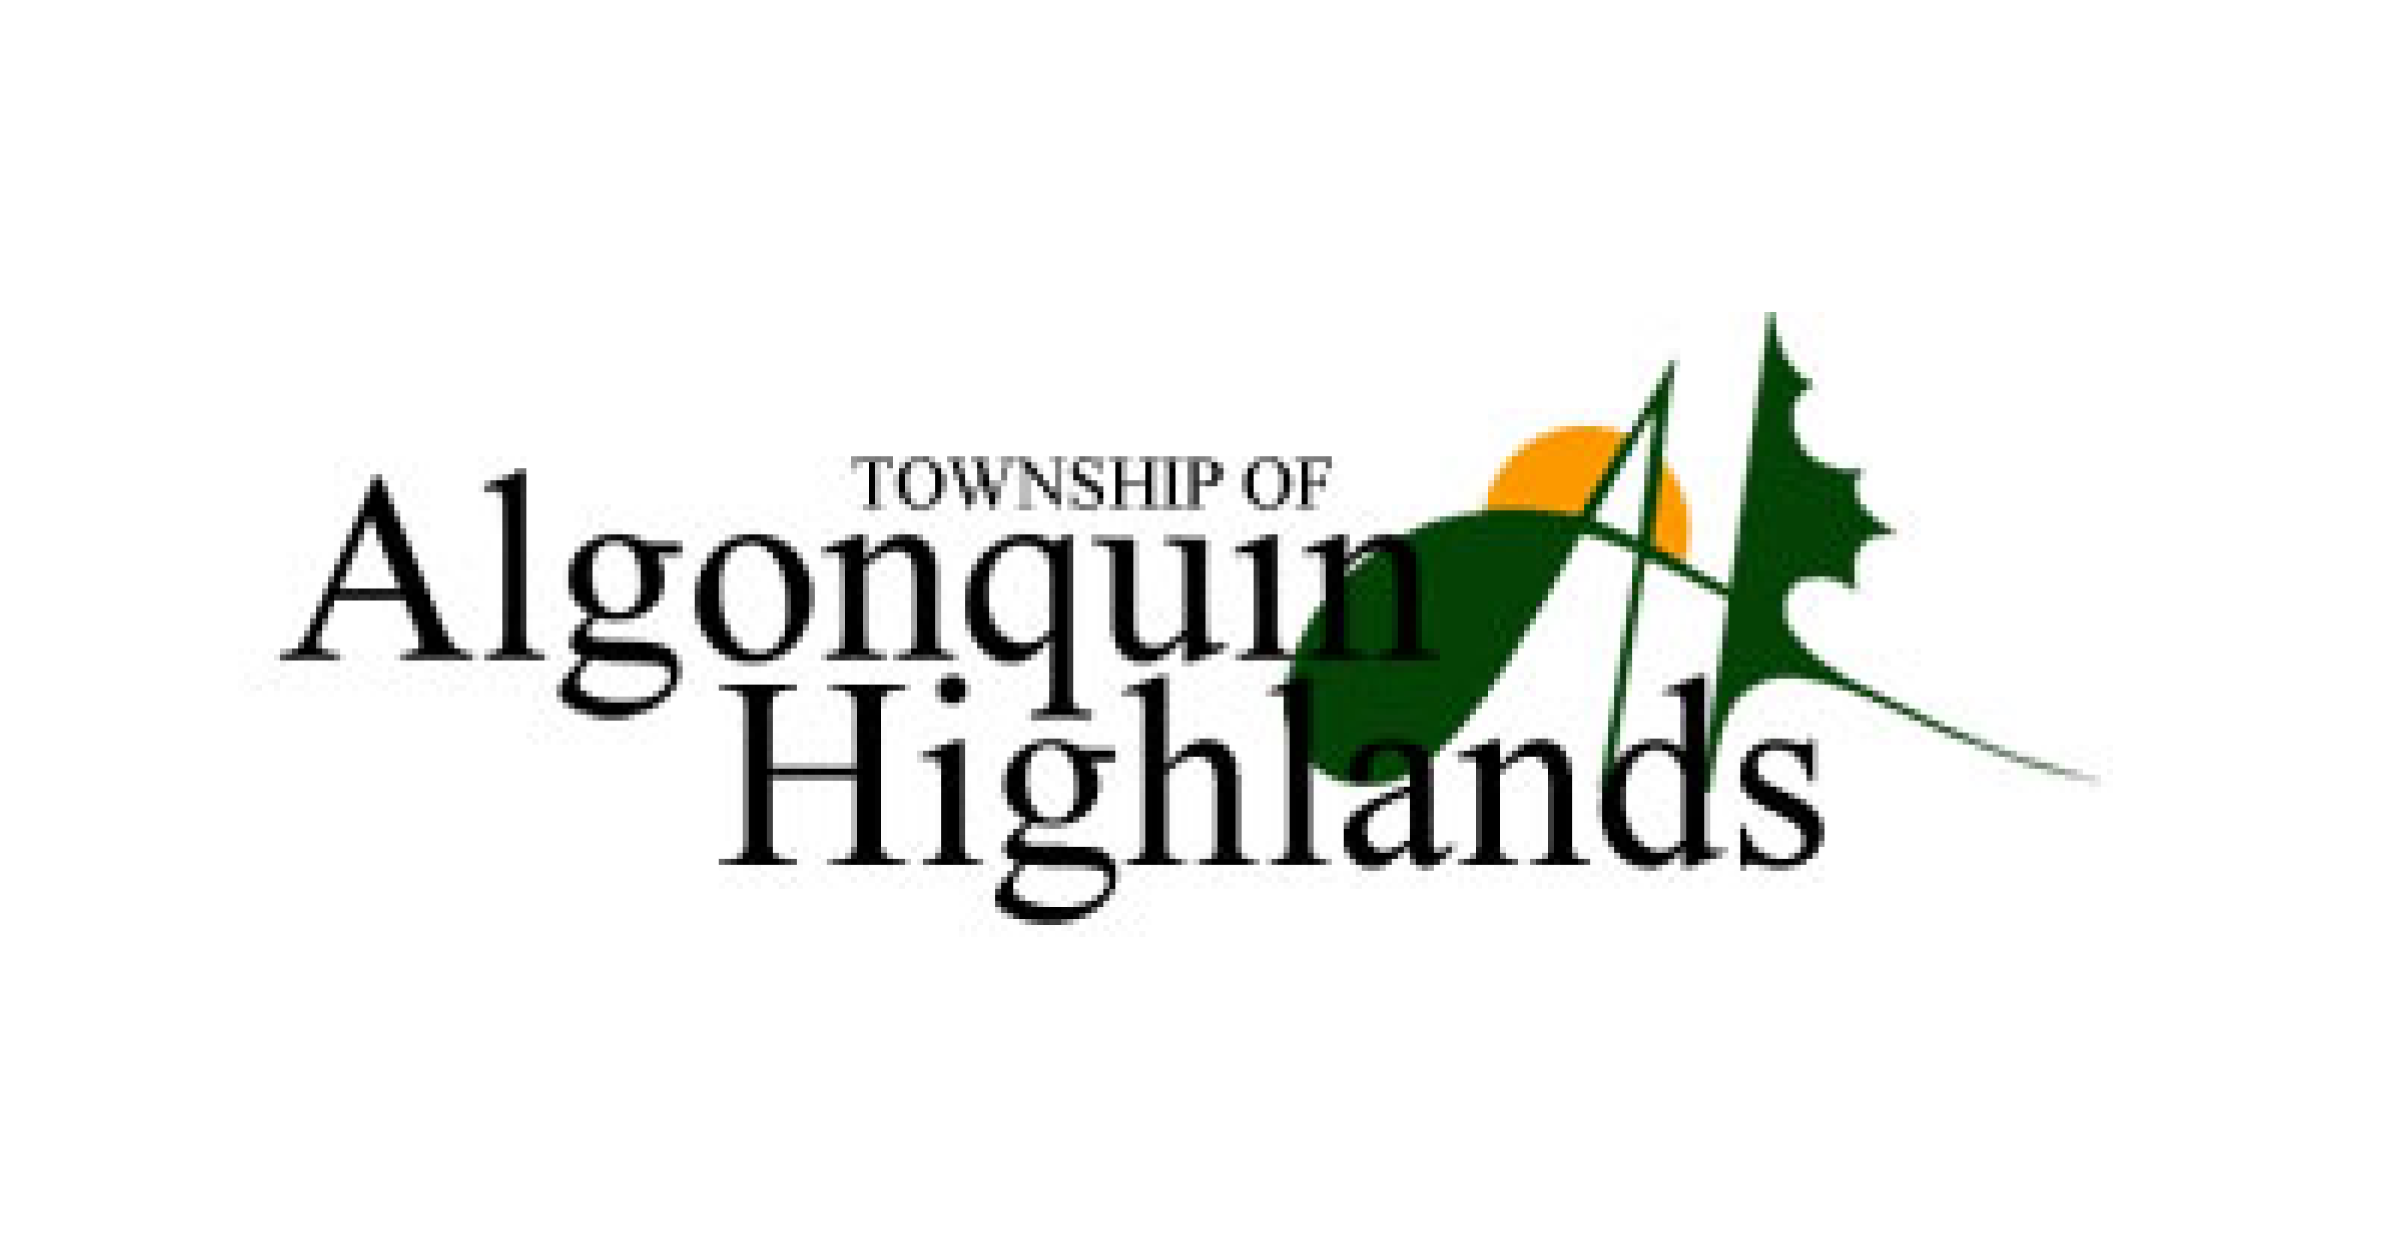 Township of Algonquin Highlands